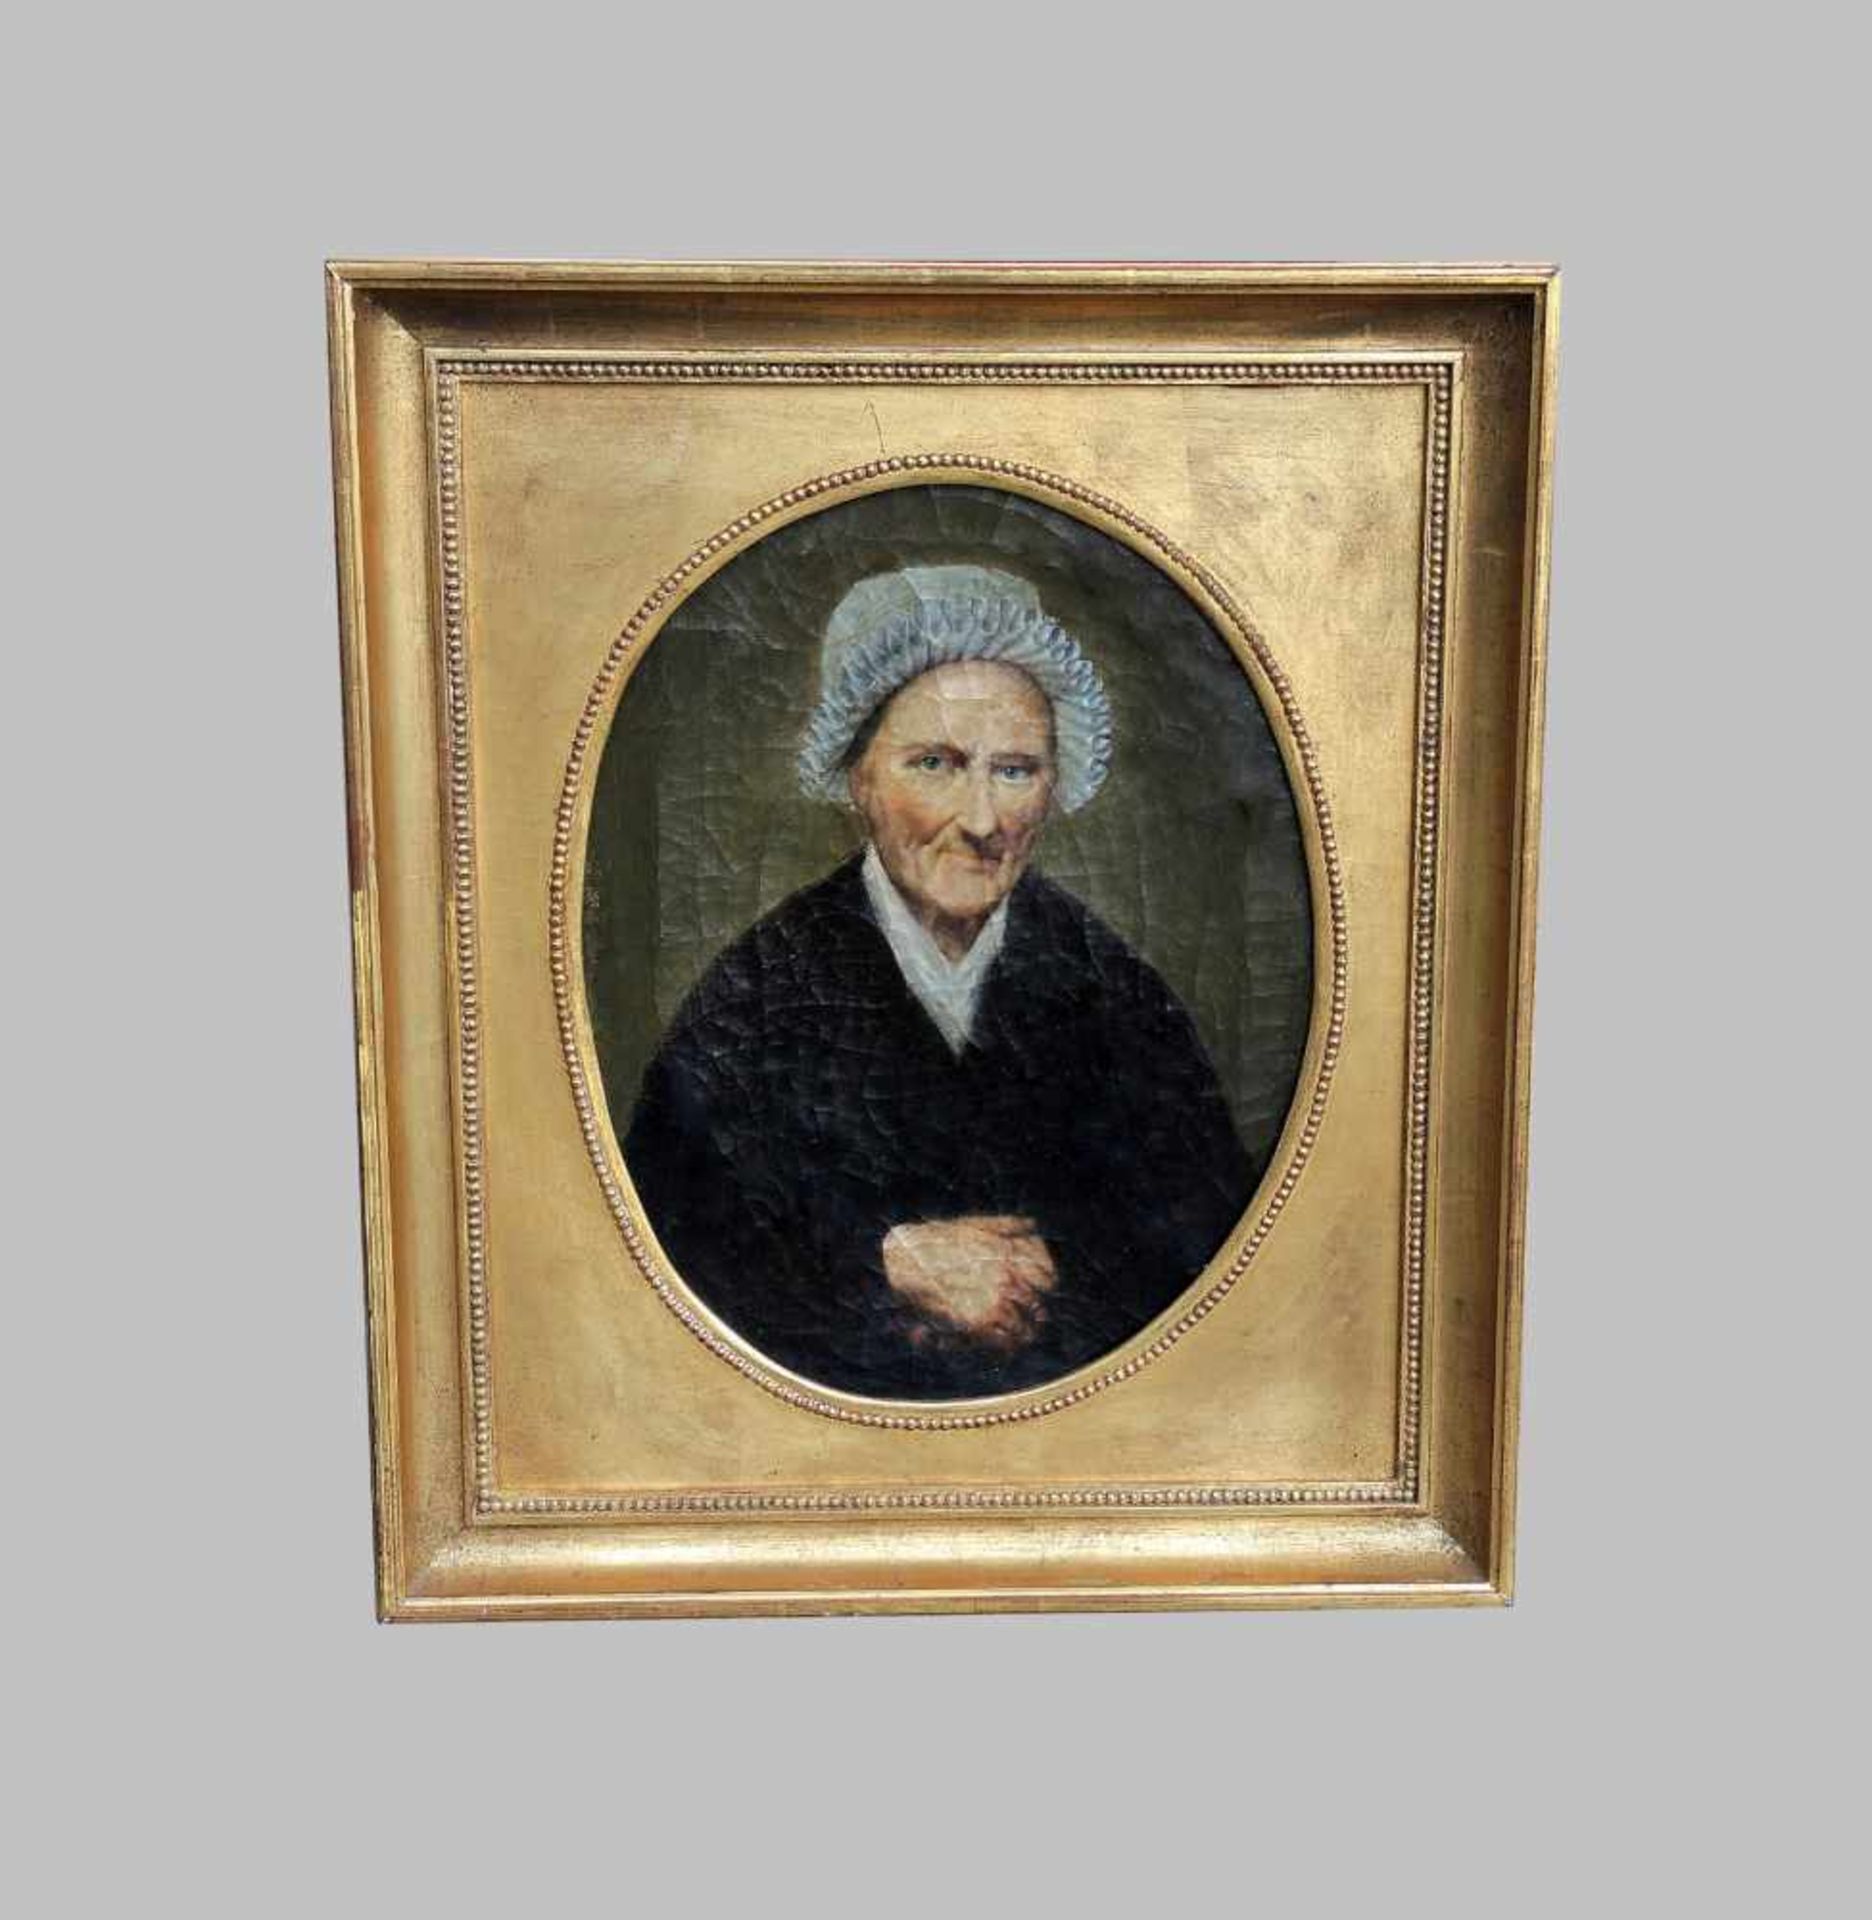 Damenporträt im OvalÖl/Leinwand. Halbporträt einer feinen dunkel gekleideten, älteren Dame mit